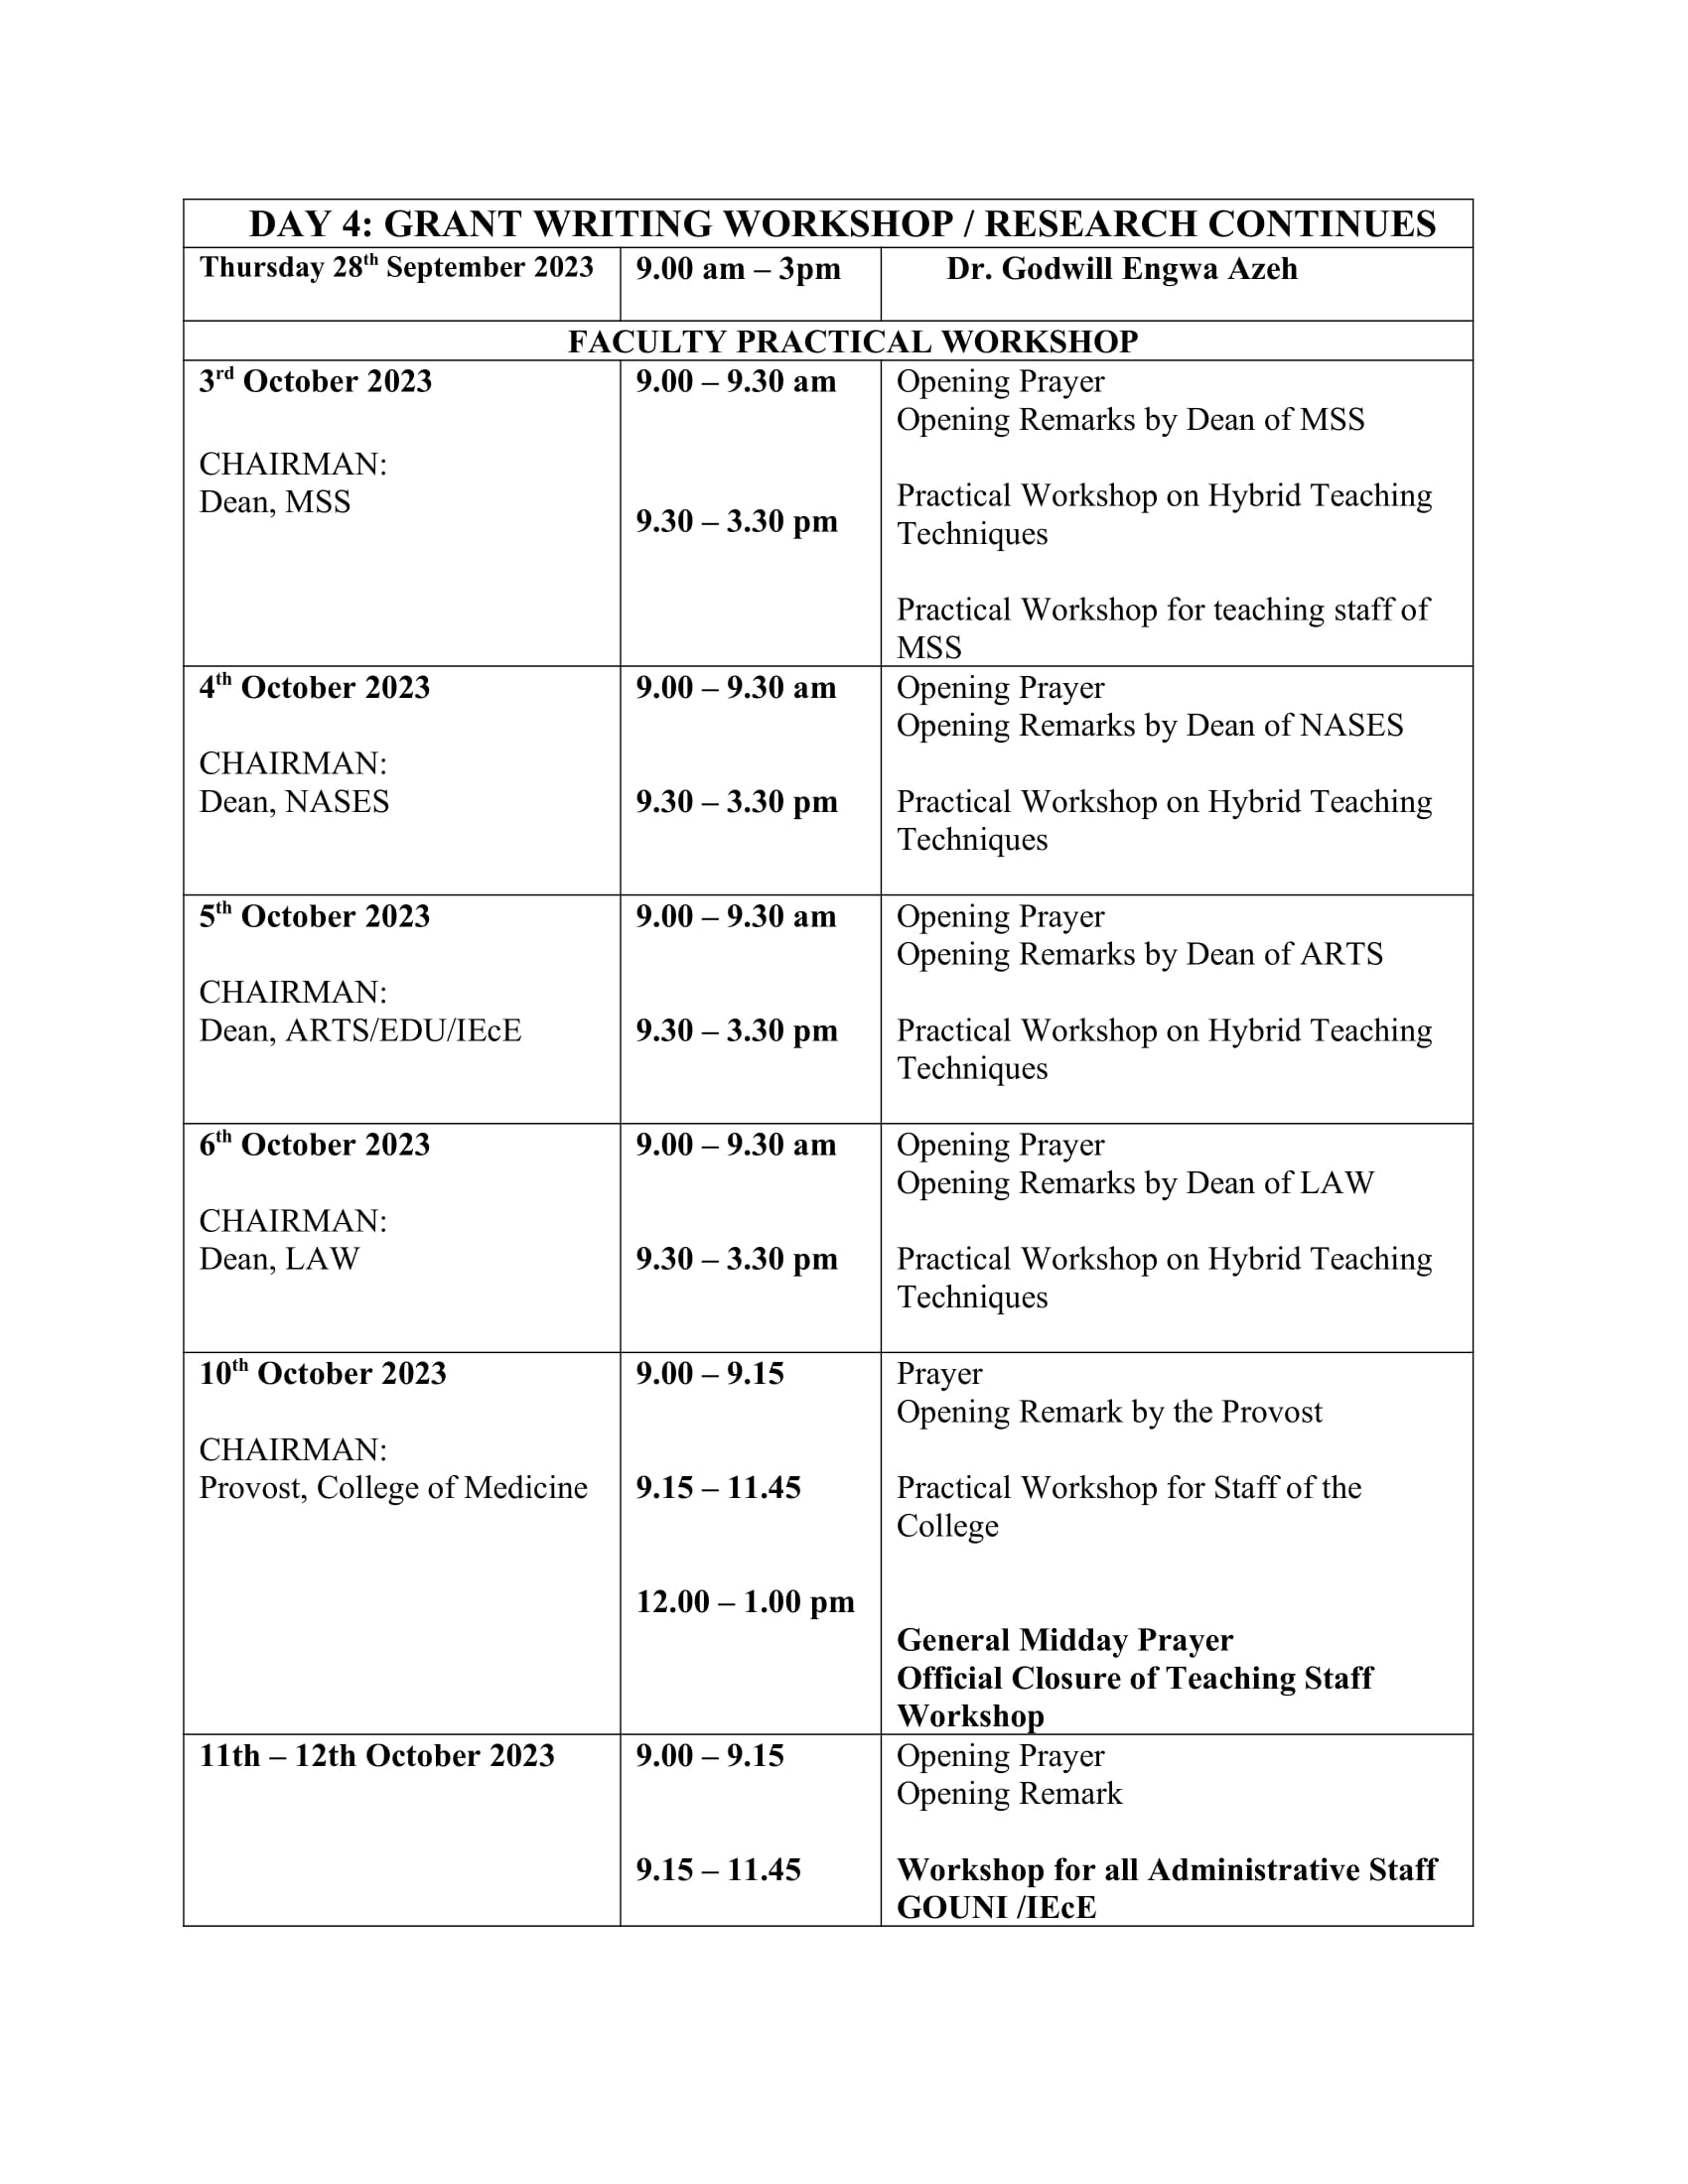 Staff Retreat and Workshop Schedule 4